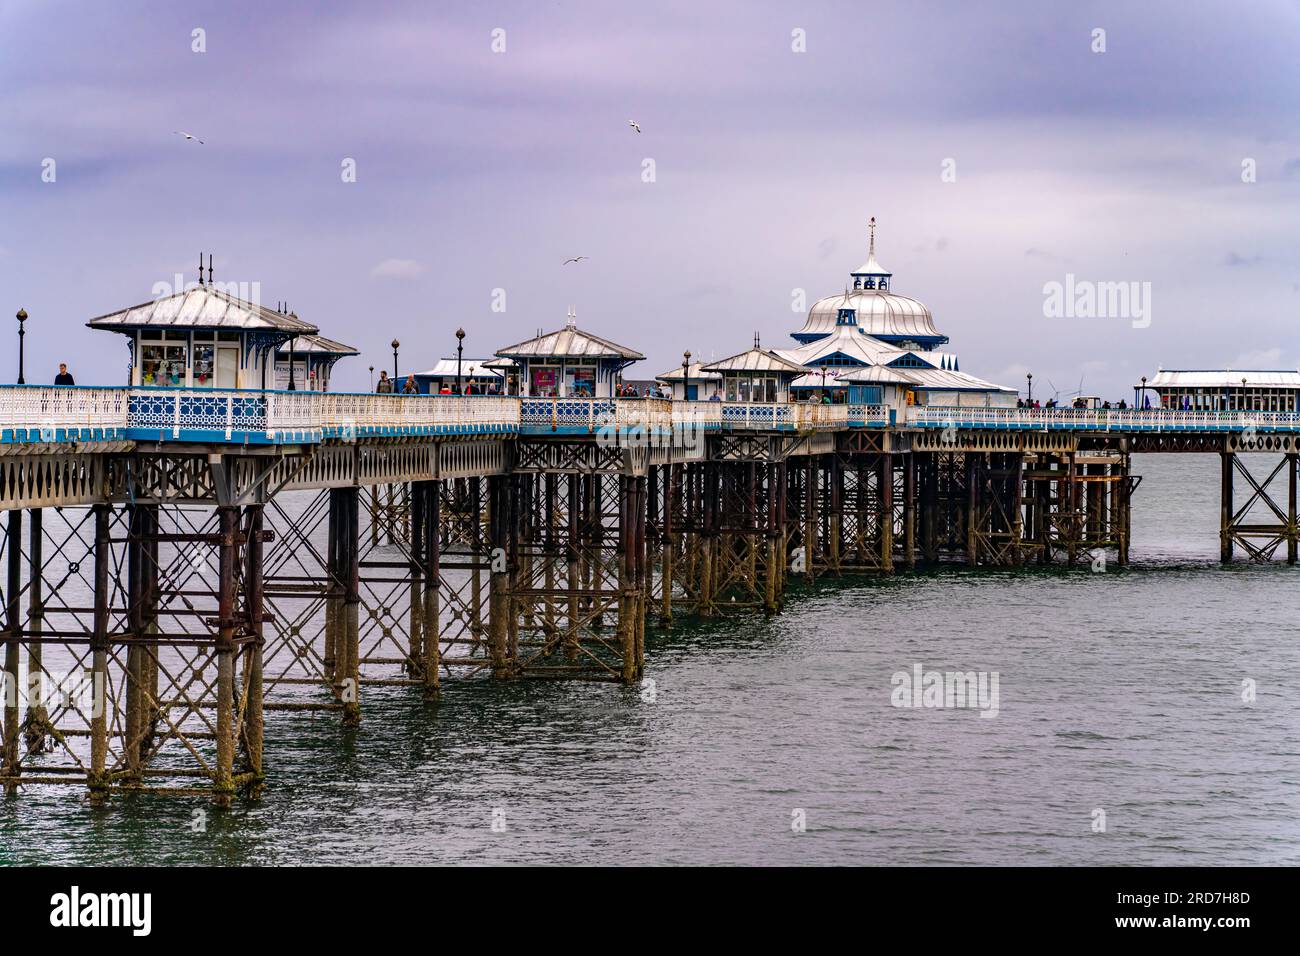 Der viktorianische Pier im Seebad Llandudno, Wales, Großbritannien, Europa | il molo vittoriano della località balneare di Llandudno, Galles, Regno Unito Foto Stock